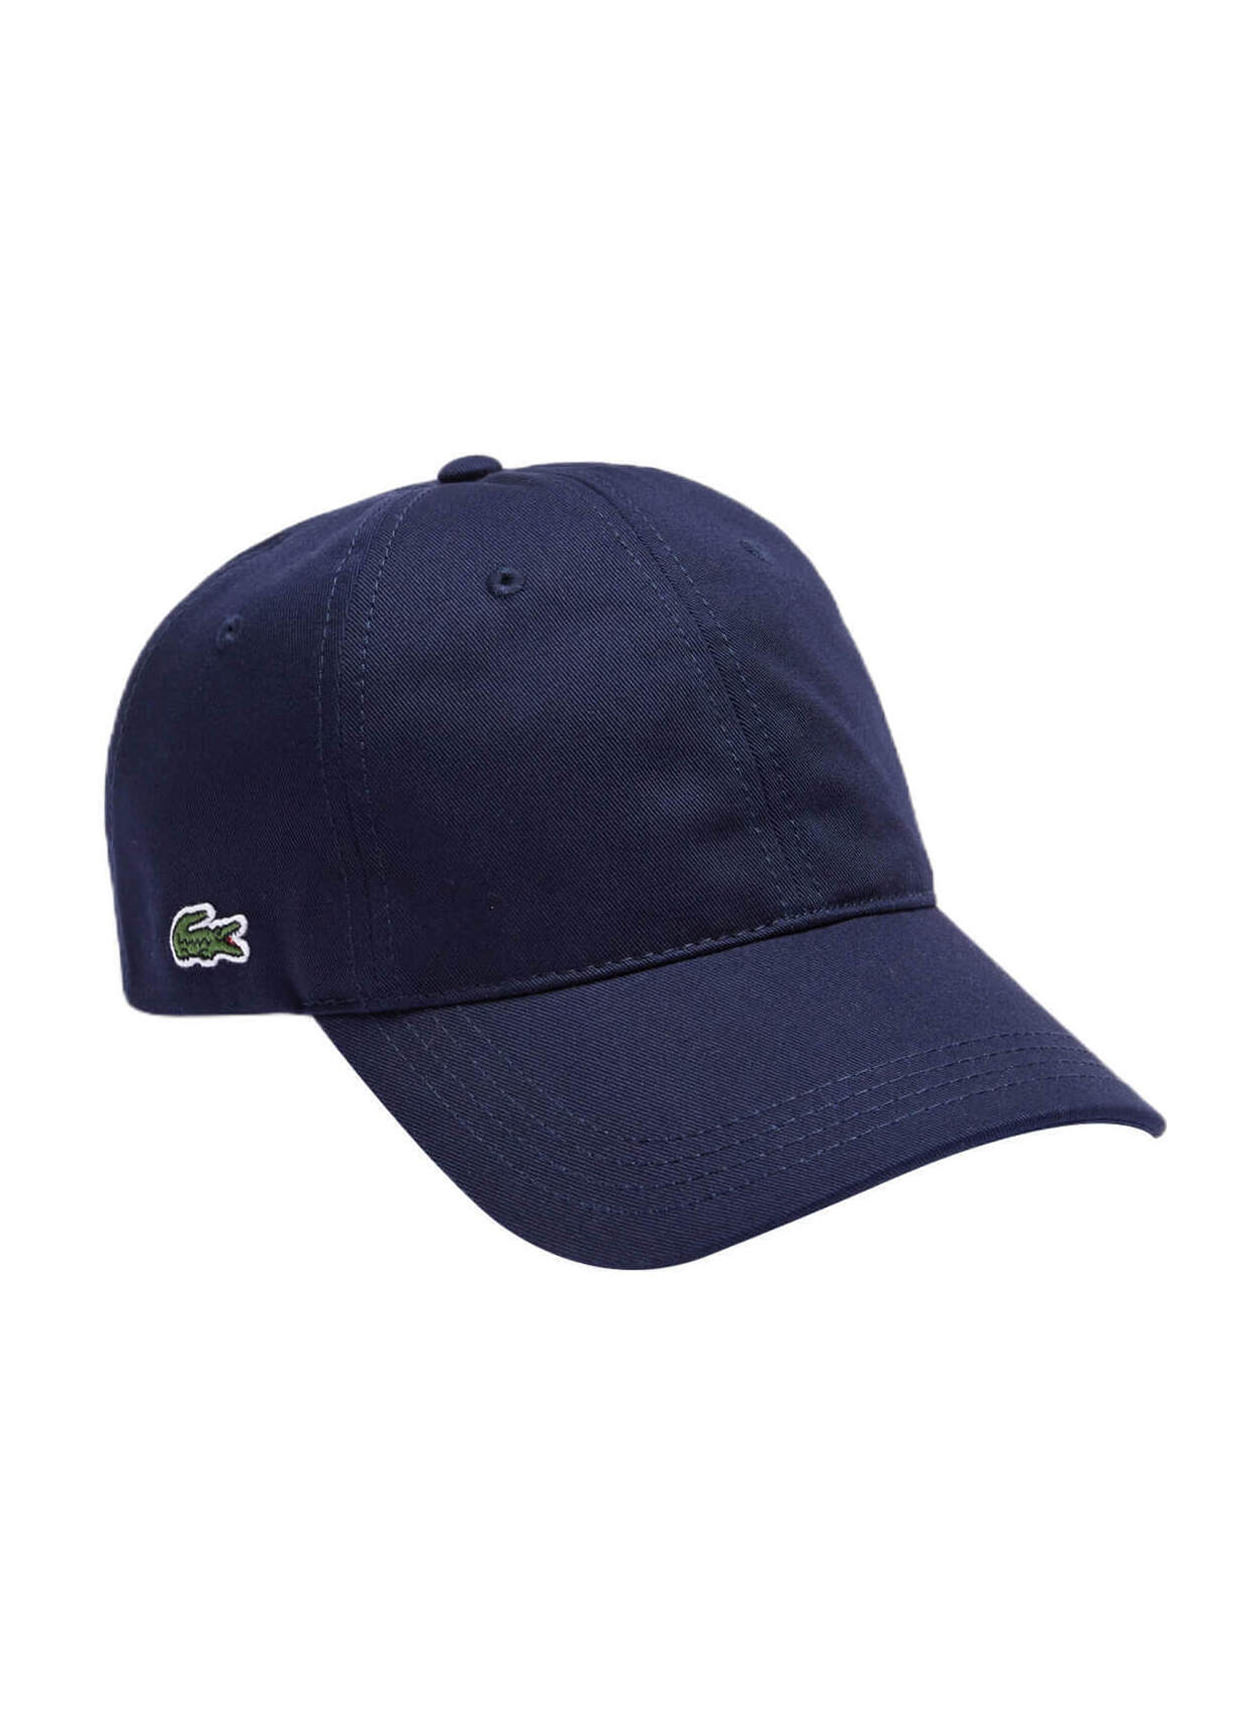 Lacoste Navy Men's Contrast Strap Cotton Hat